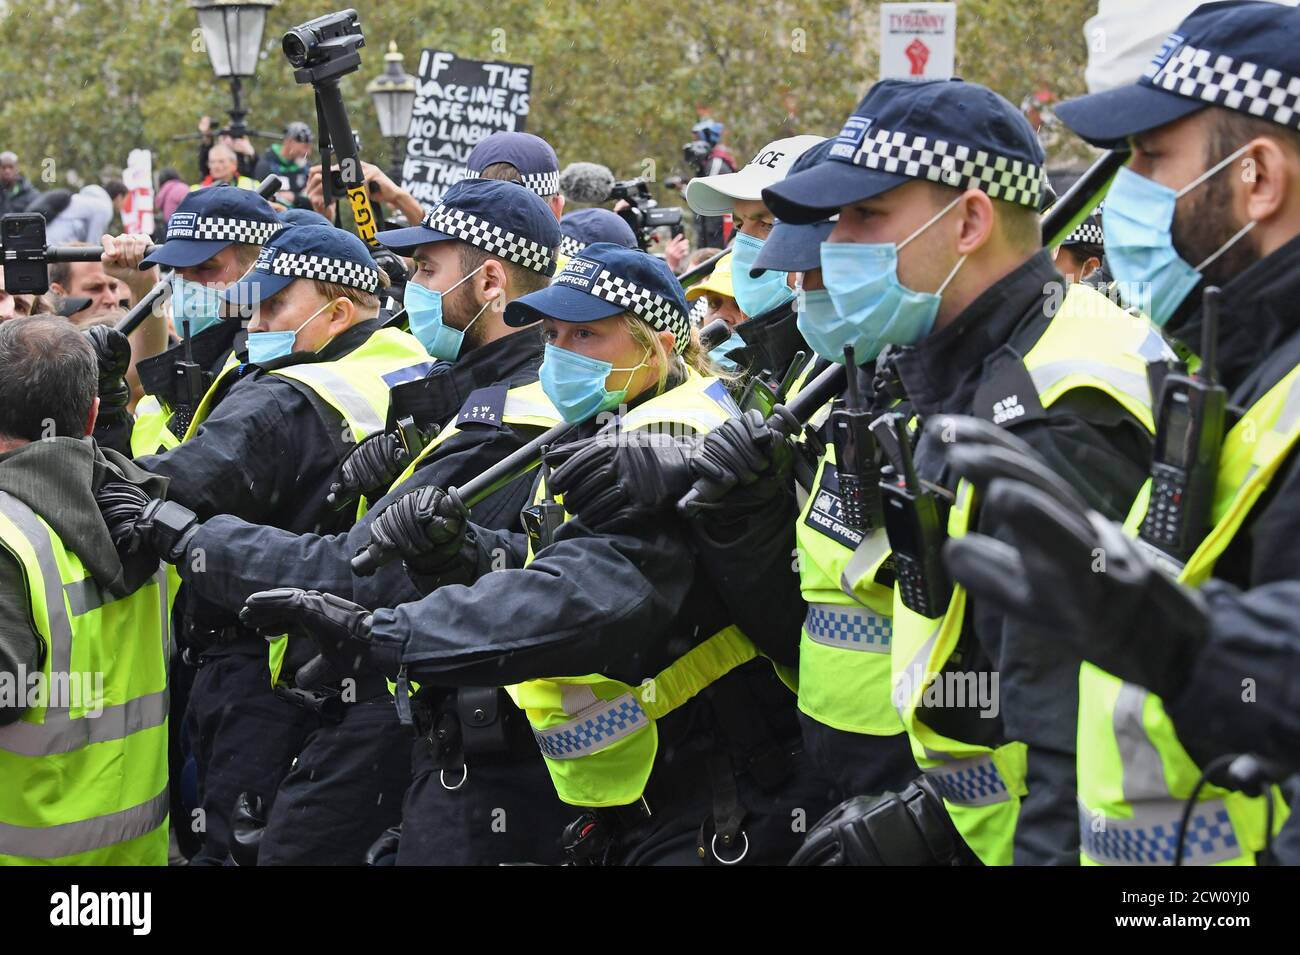 Die Polizei bei einer Kundgebung auf dem Trafalgar Square in London, die von Stop New Normal organisiert wurde, um gegen die Einschränkungen des Coronavirus zu protestieren. Stockfoto